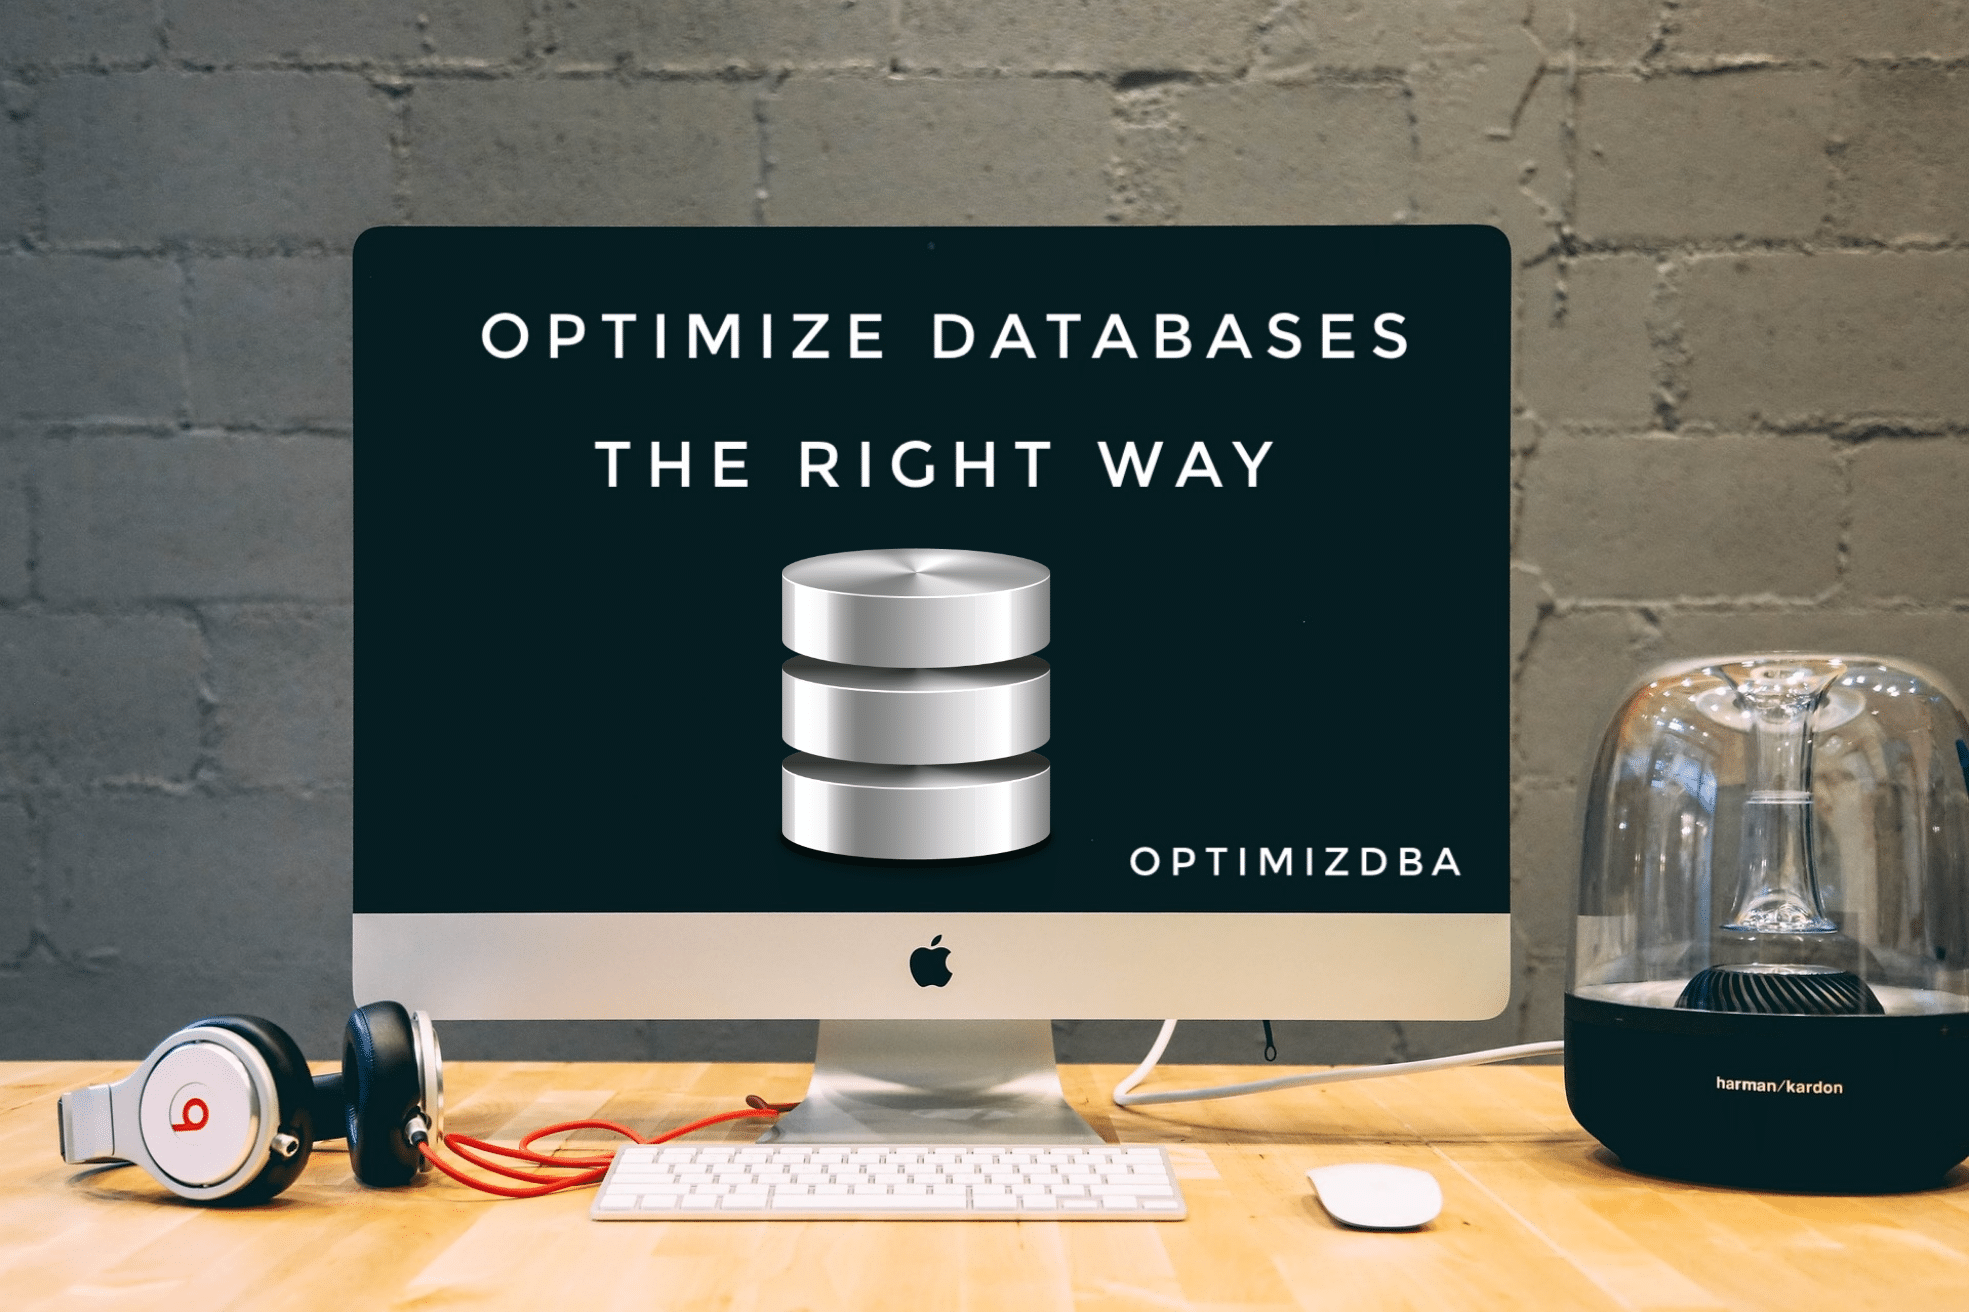 OptimizDBA - Database Optimization